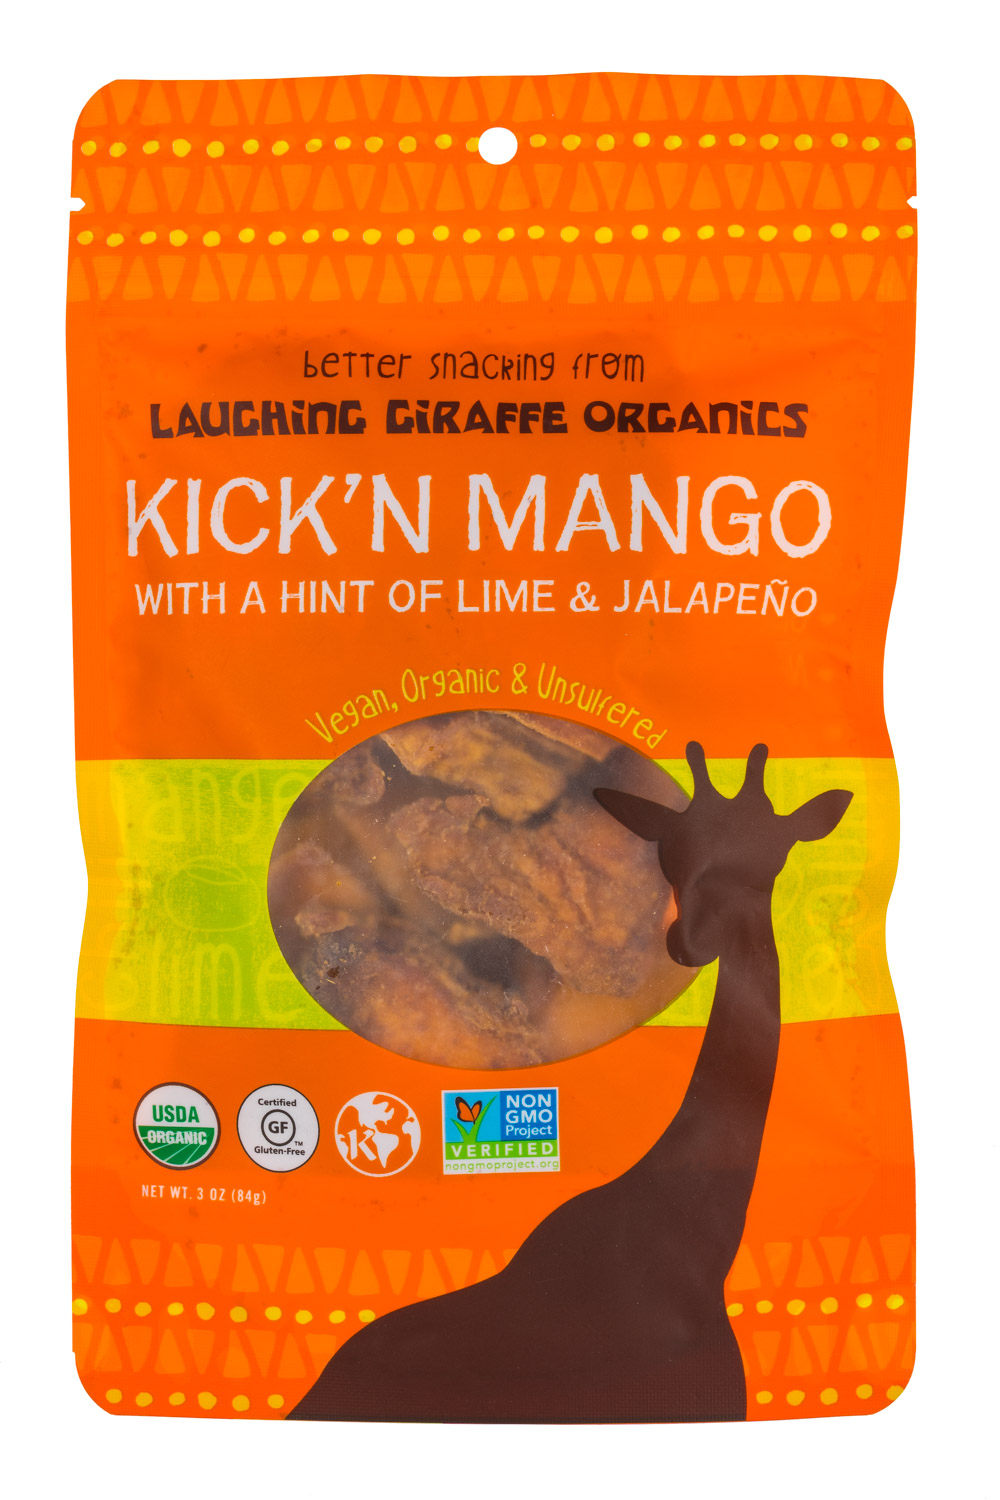 Kickin' Mango